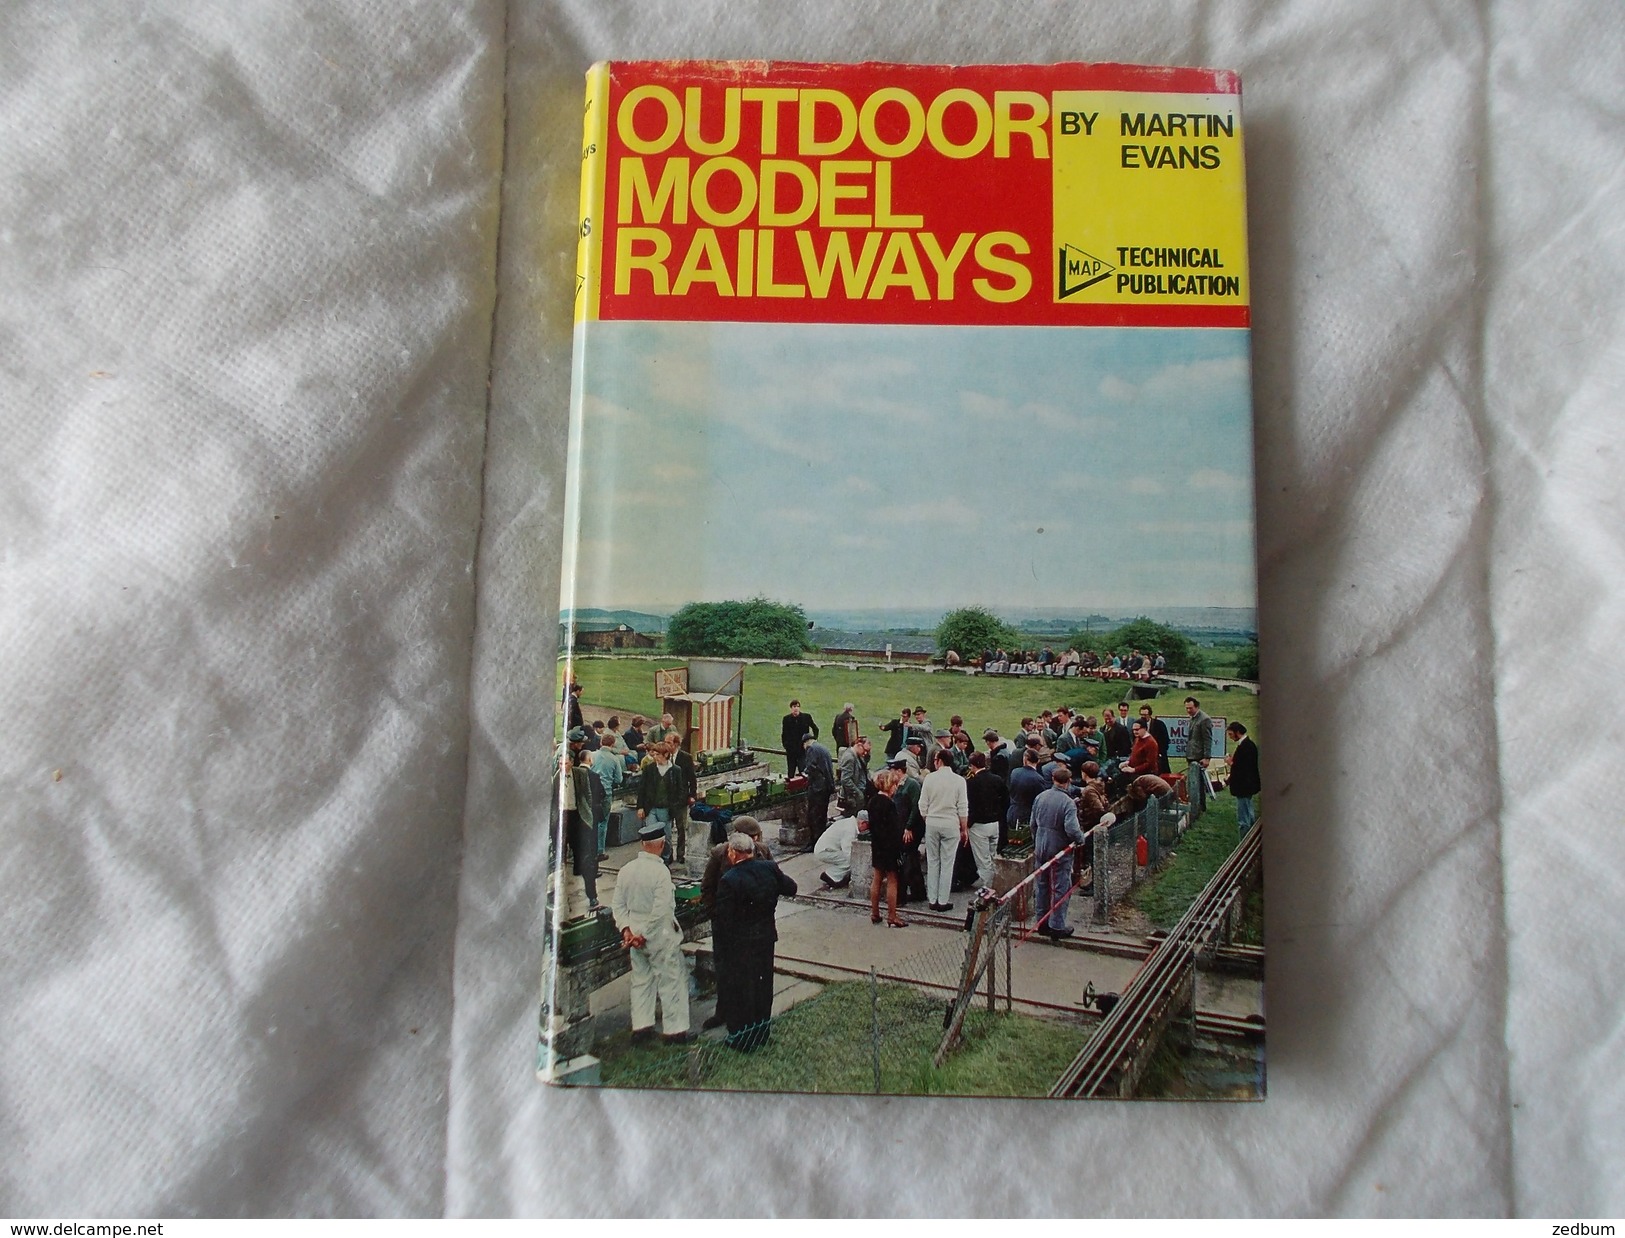 Outdoor Model Railways By Martin Evans - Themengebiet Sammeln